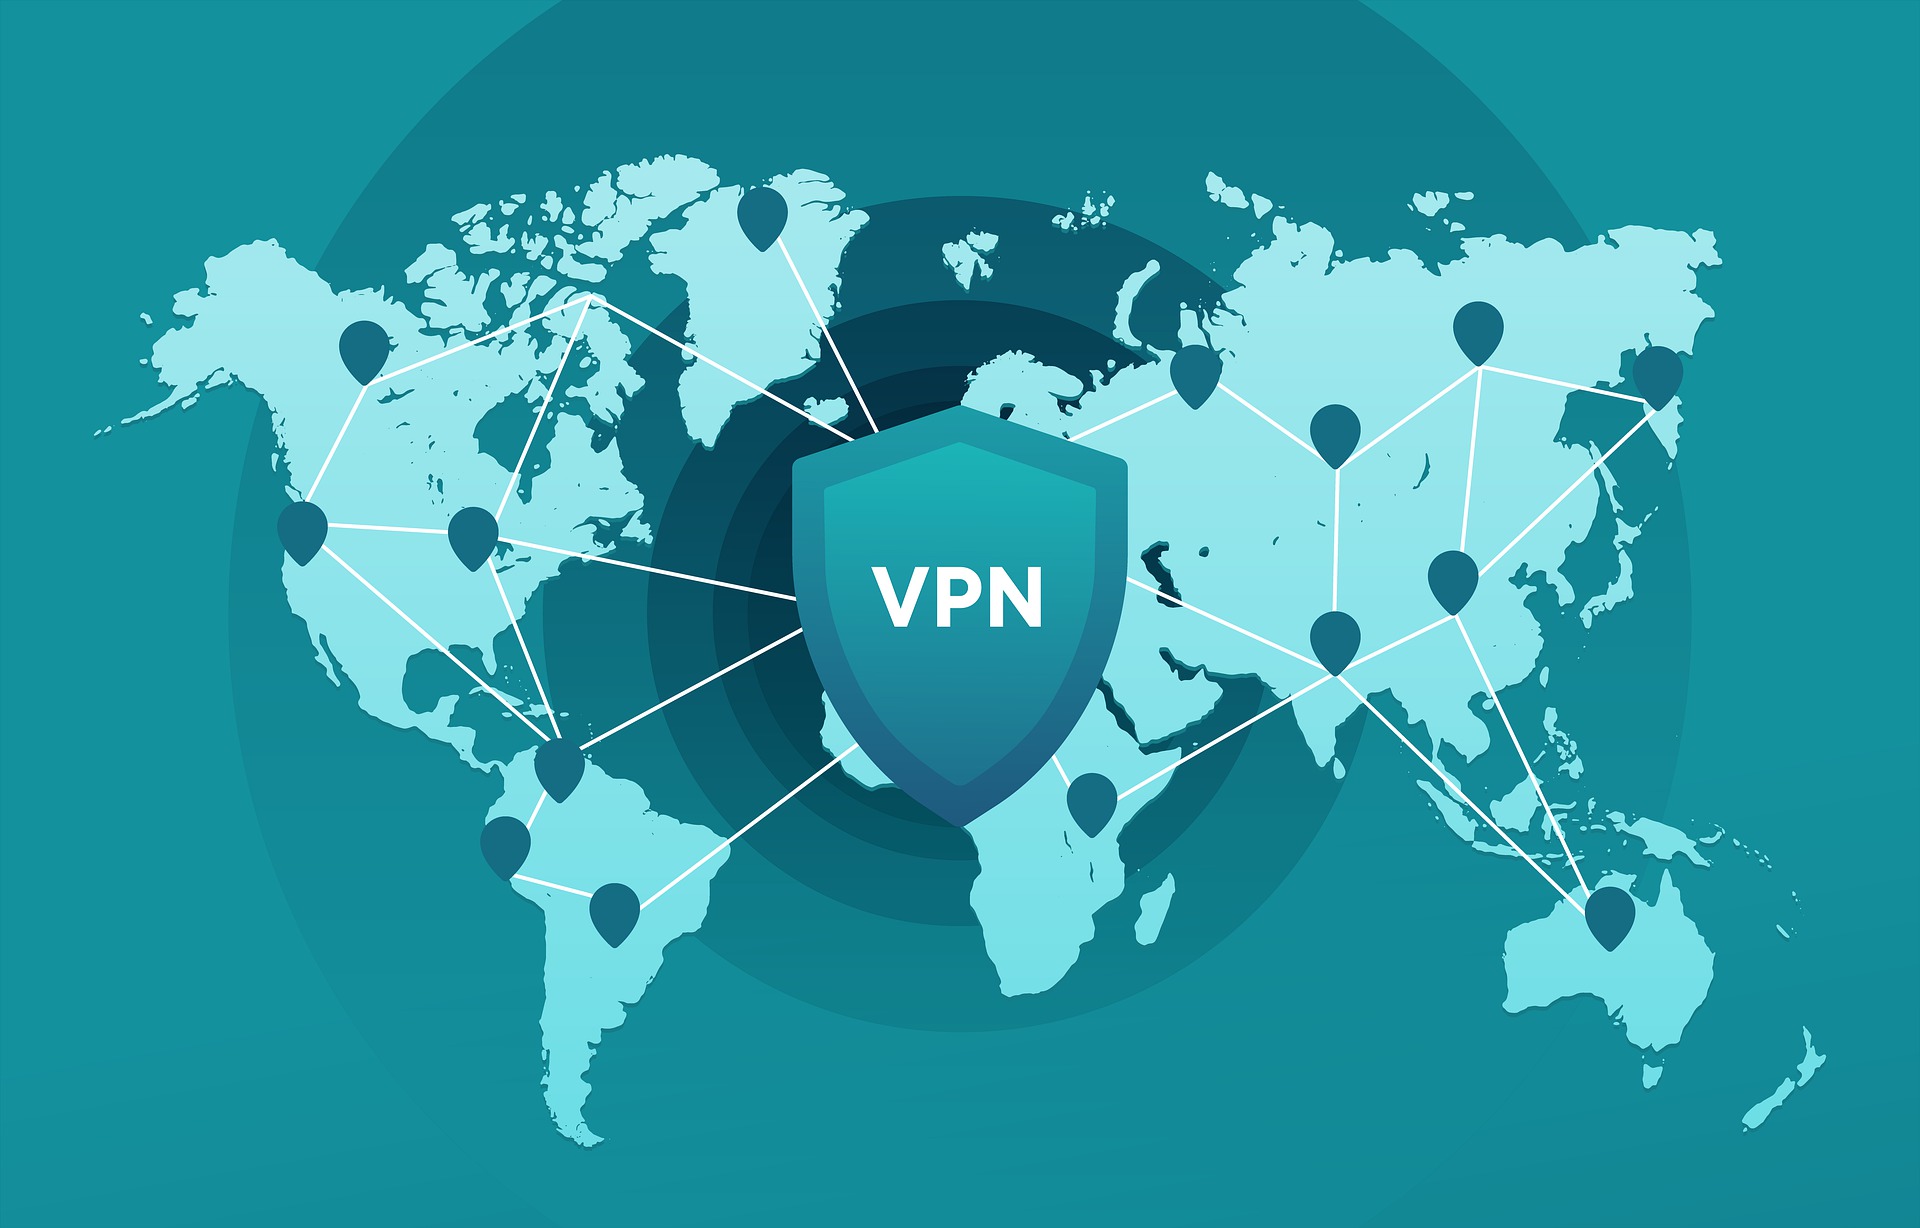 ¿Qué es una VPN y para qué sirve?